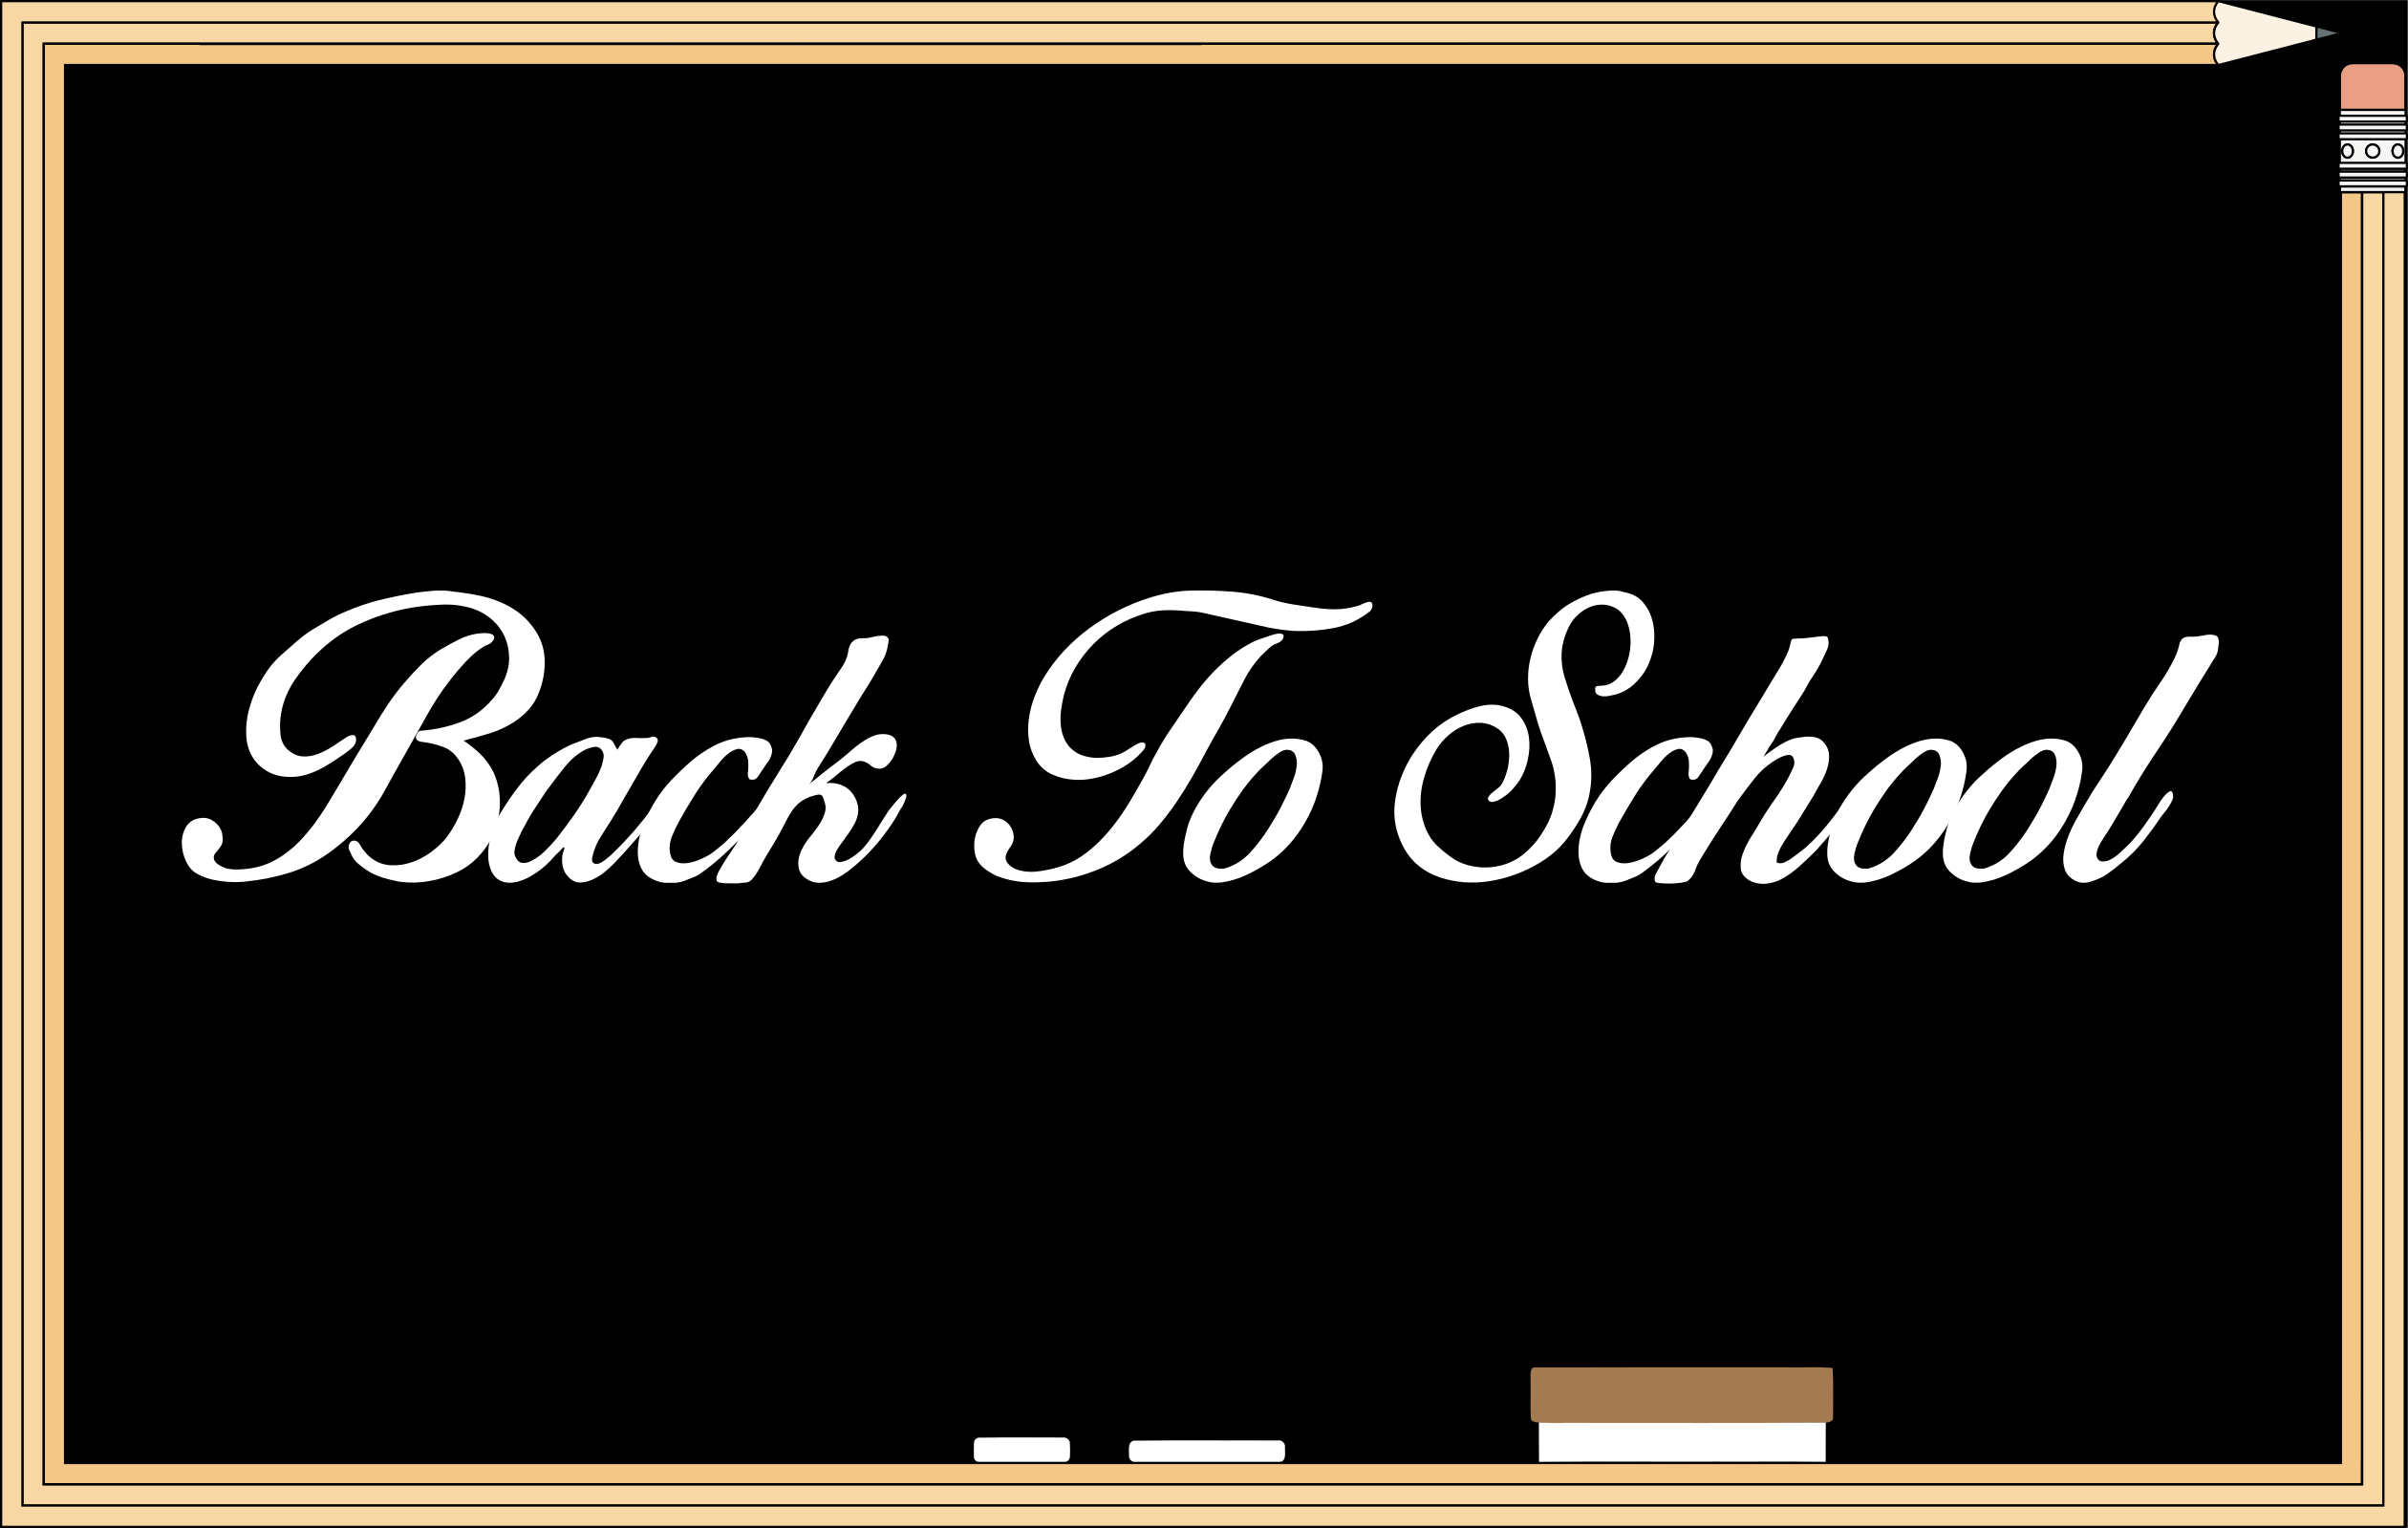 Back-To-School-blackboard